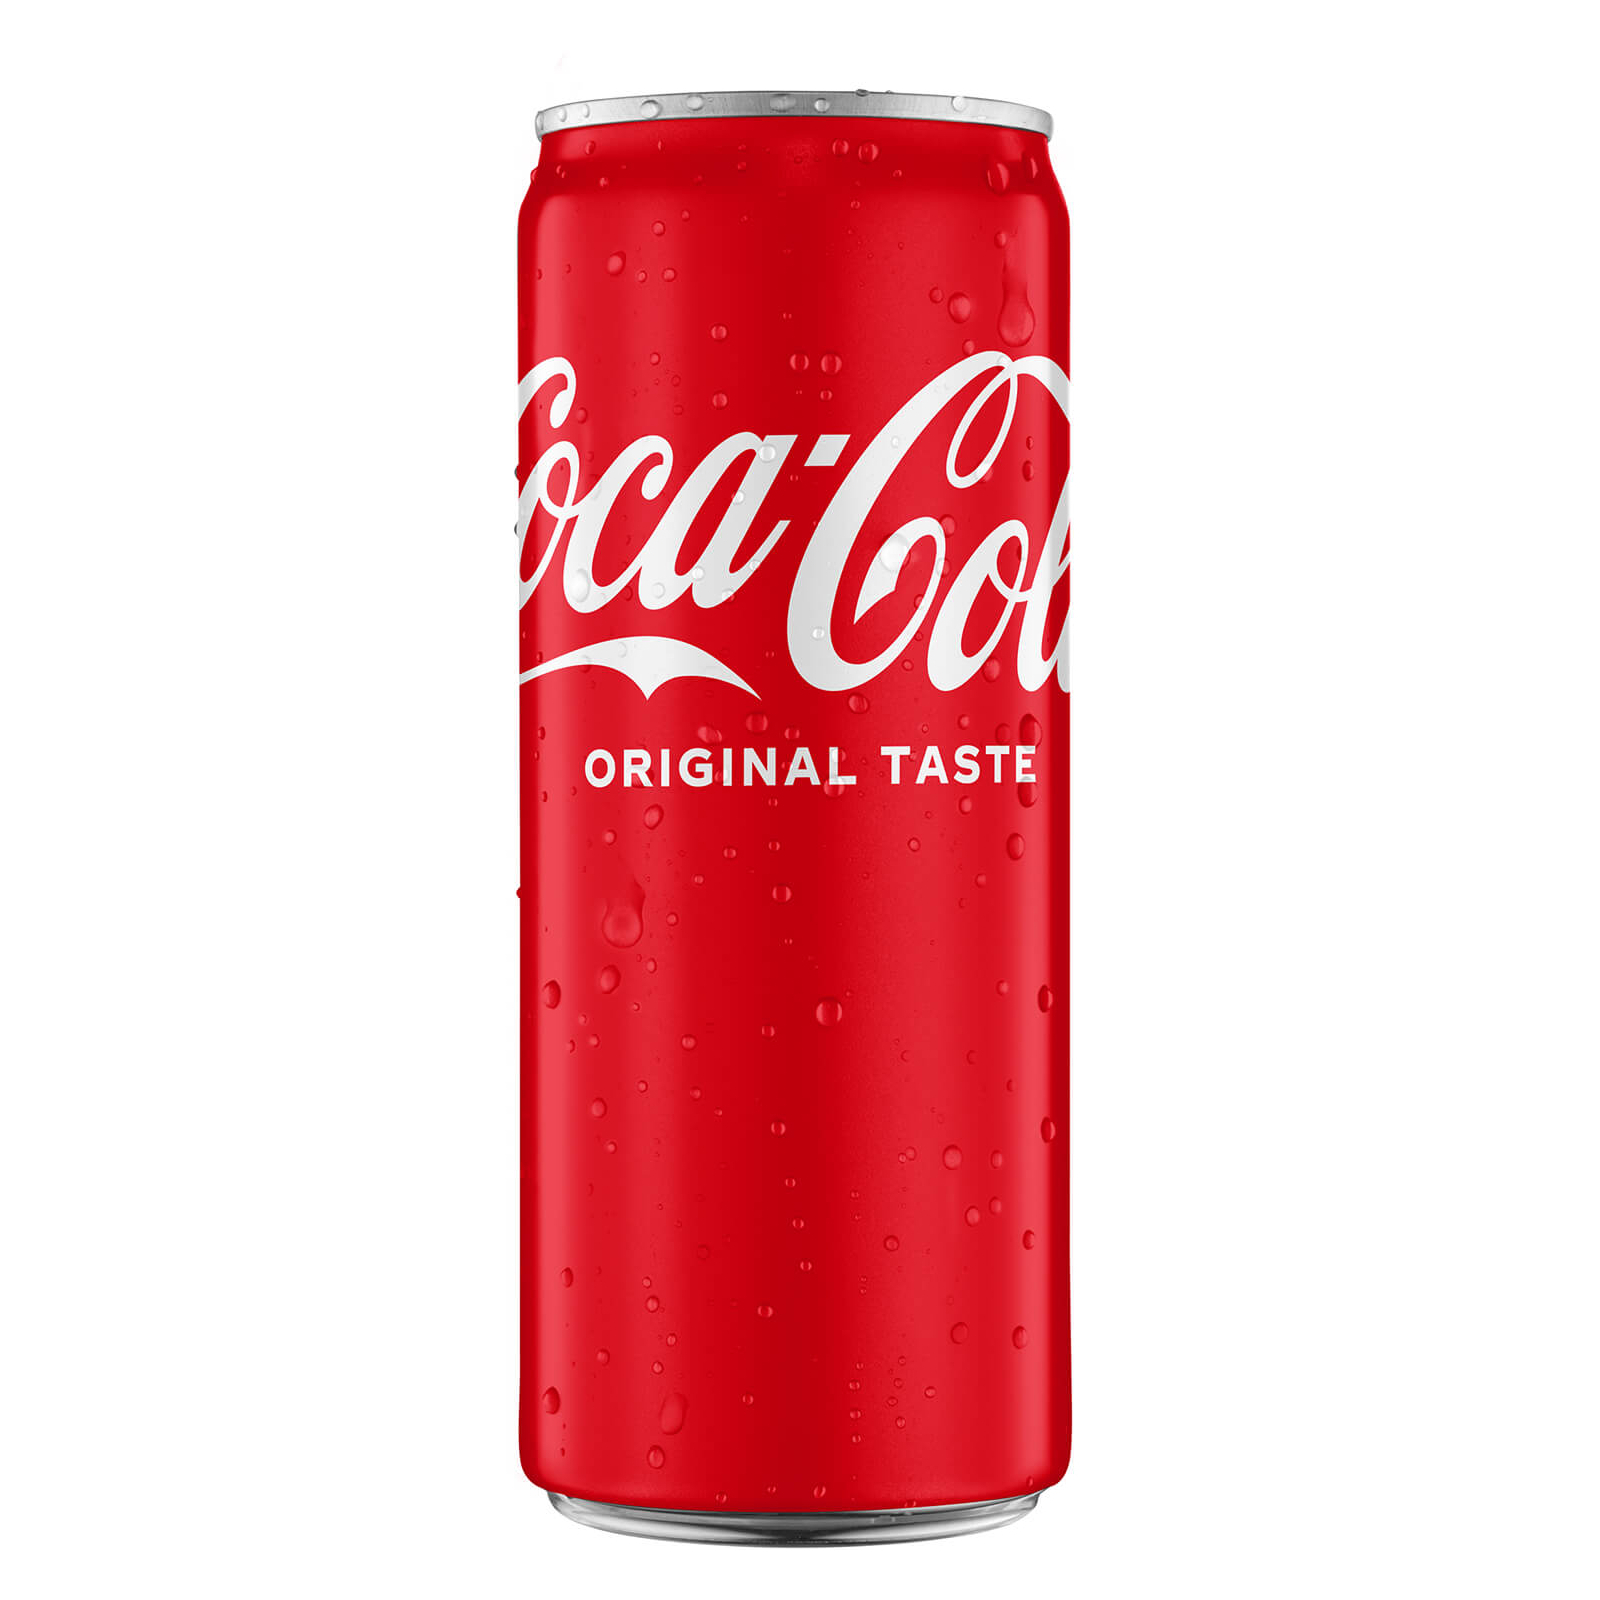 Напиток Coca-Cola сильногазированный 330 мл (000996)